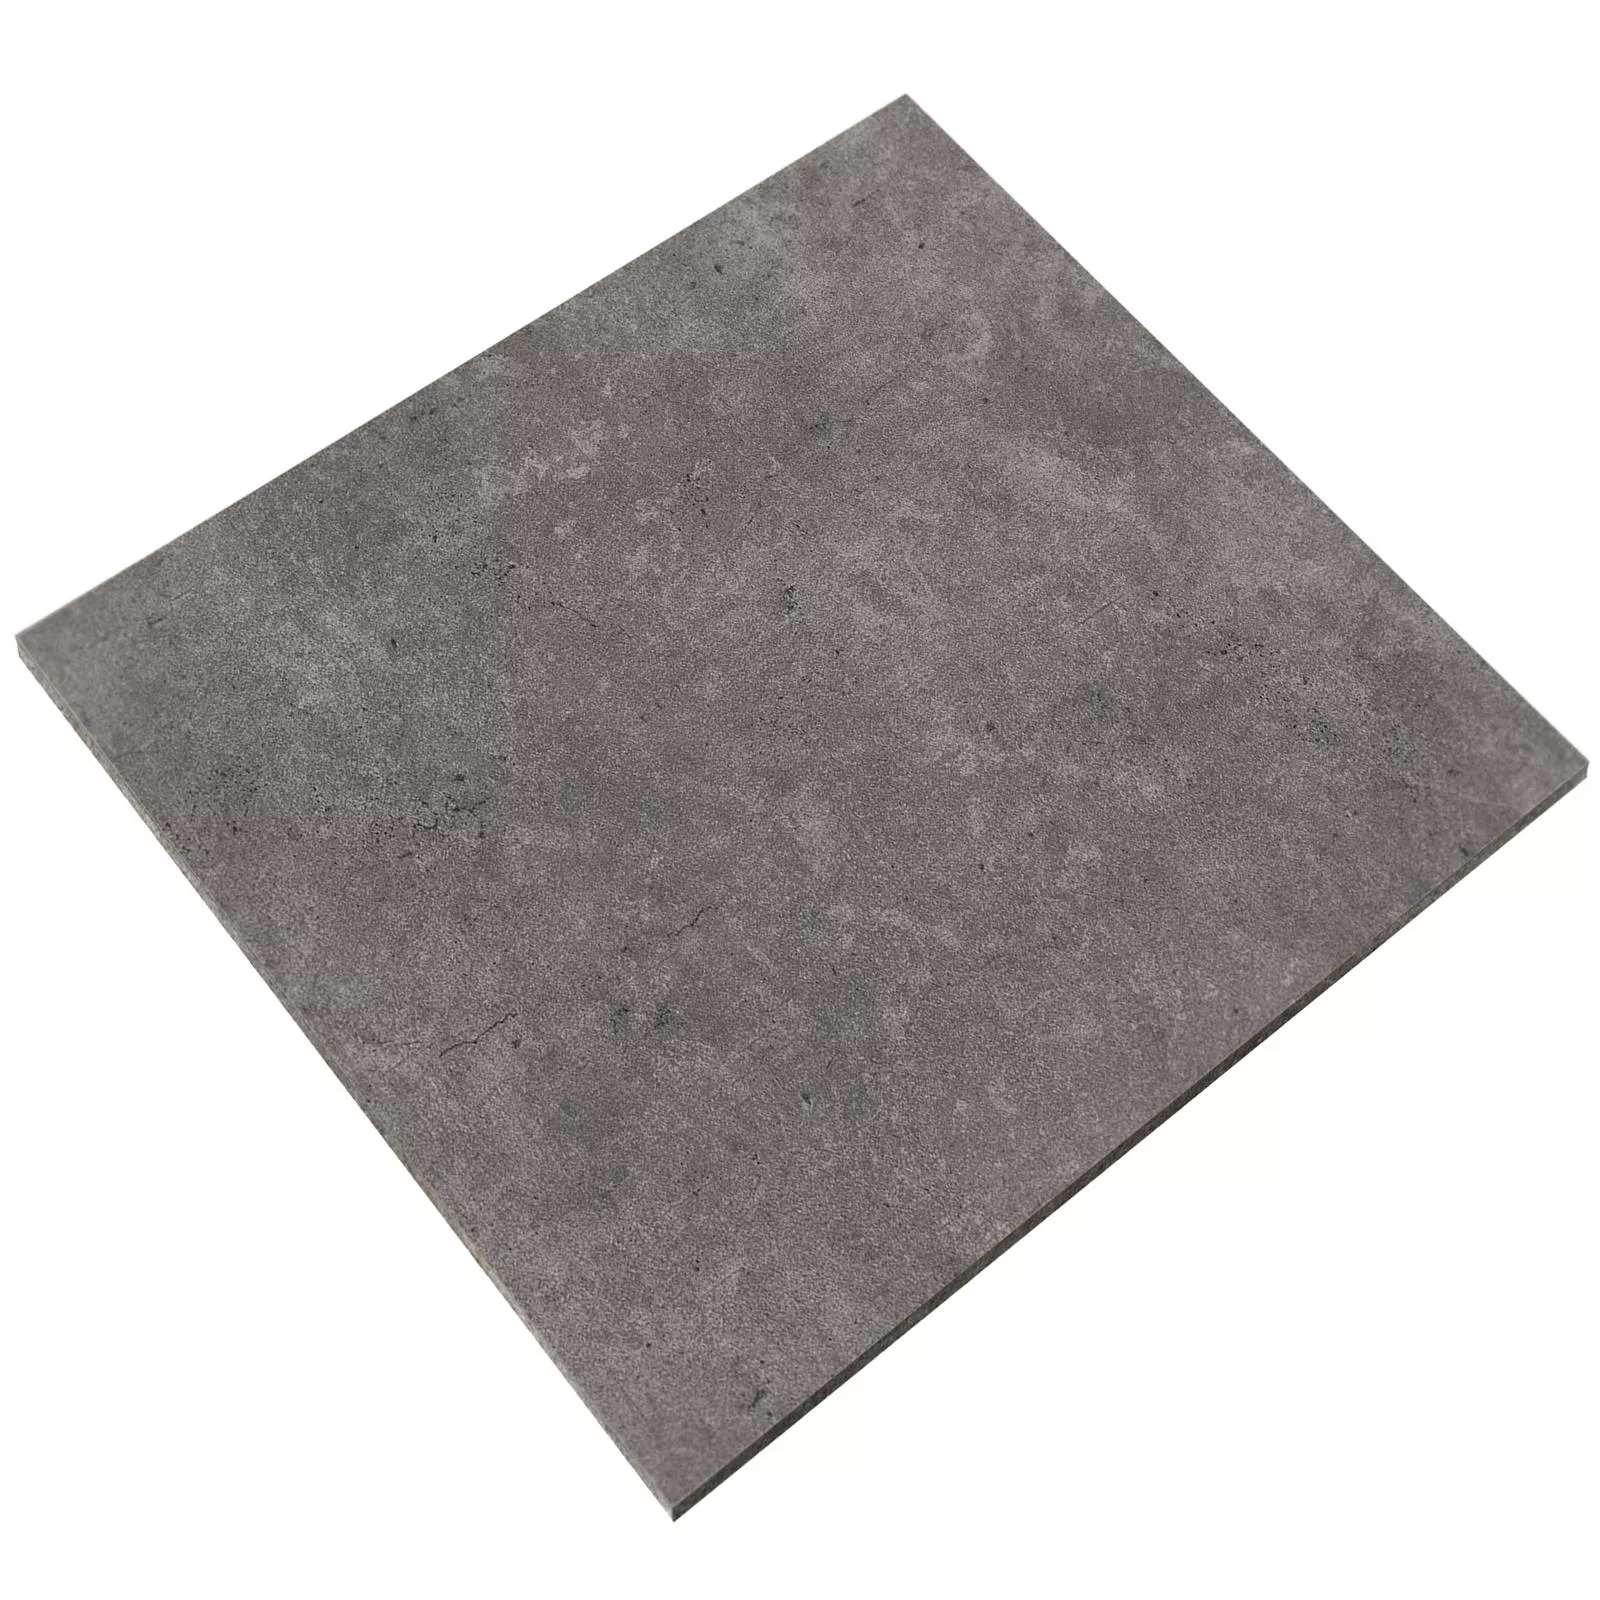 Sample Floor Tiles Jamaica Beton Optic Anthracite 60x60cm